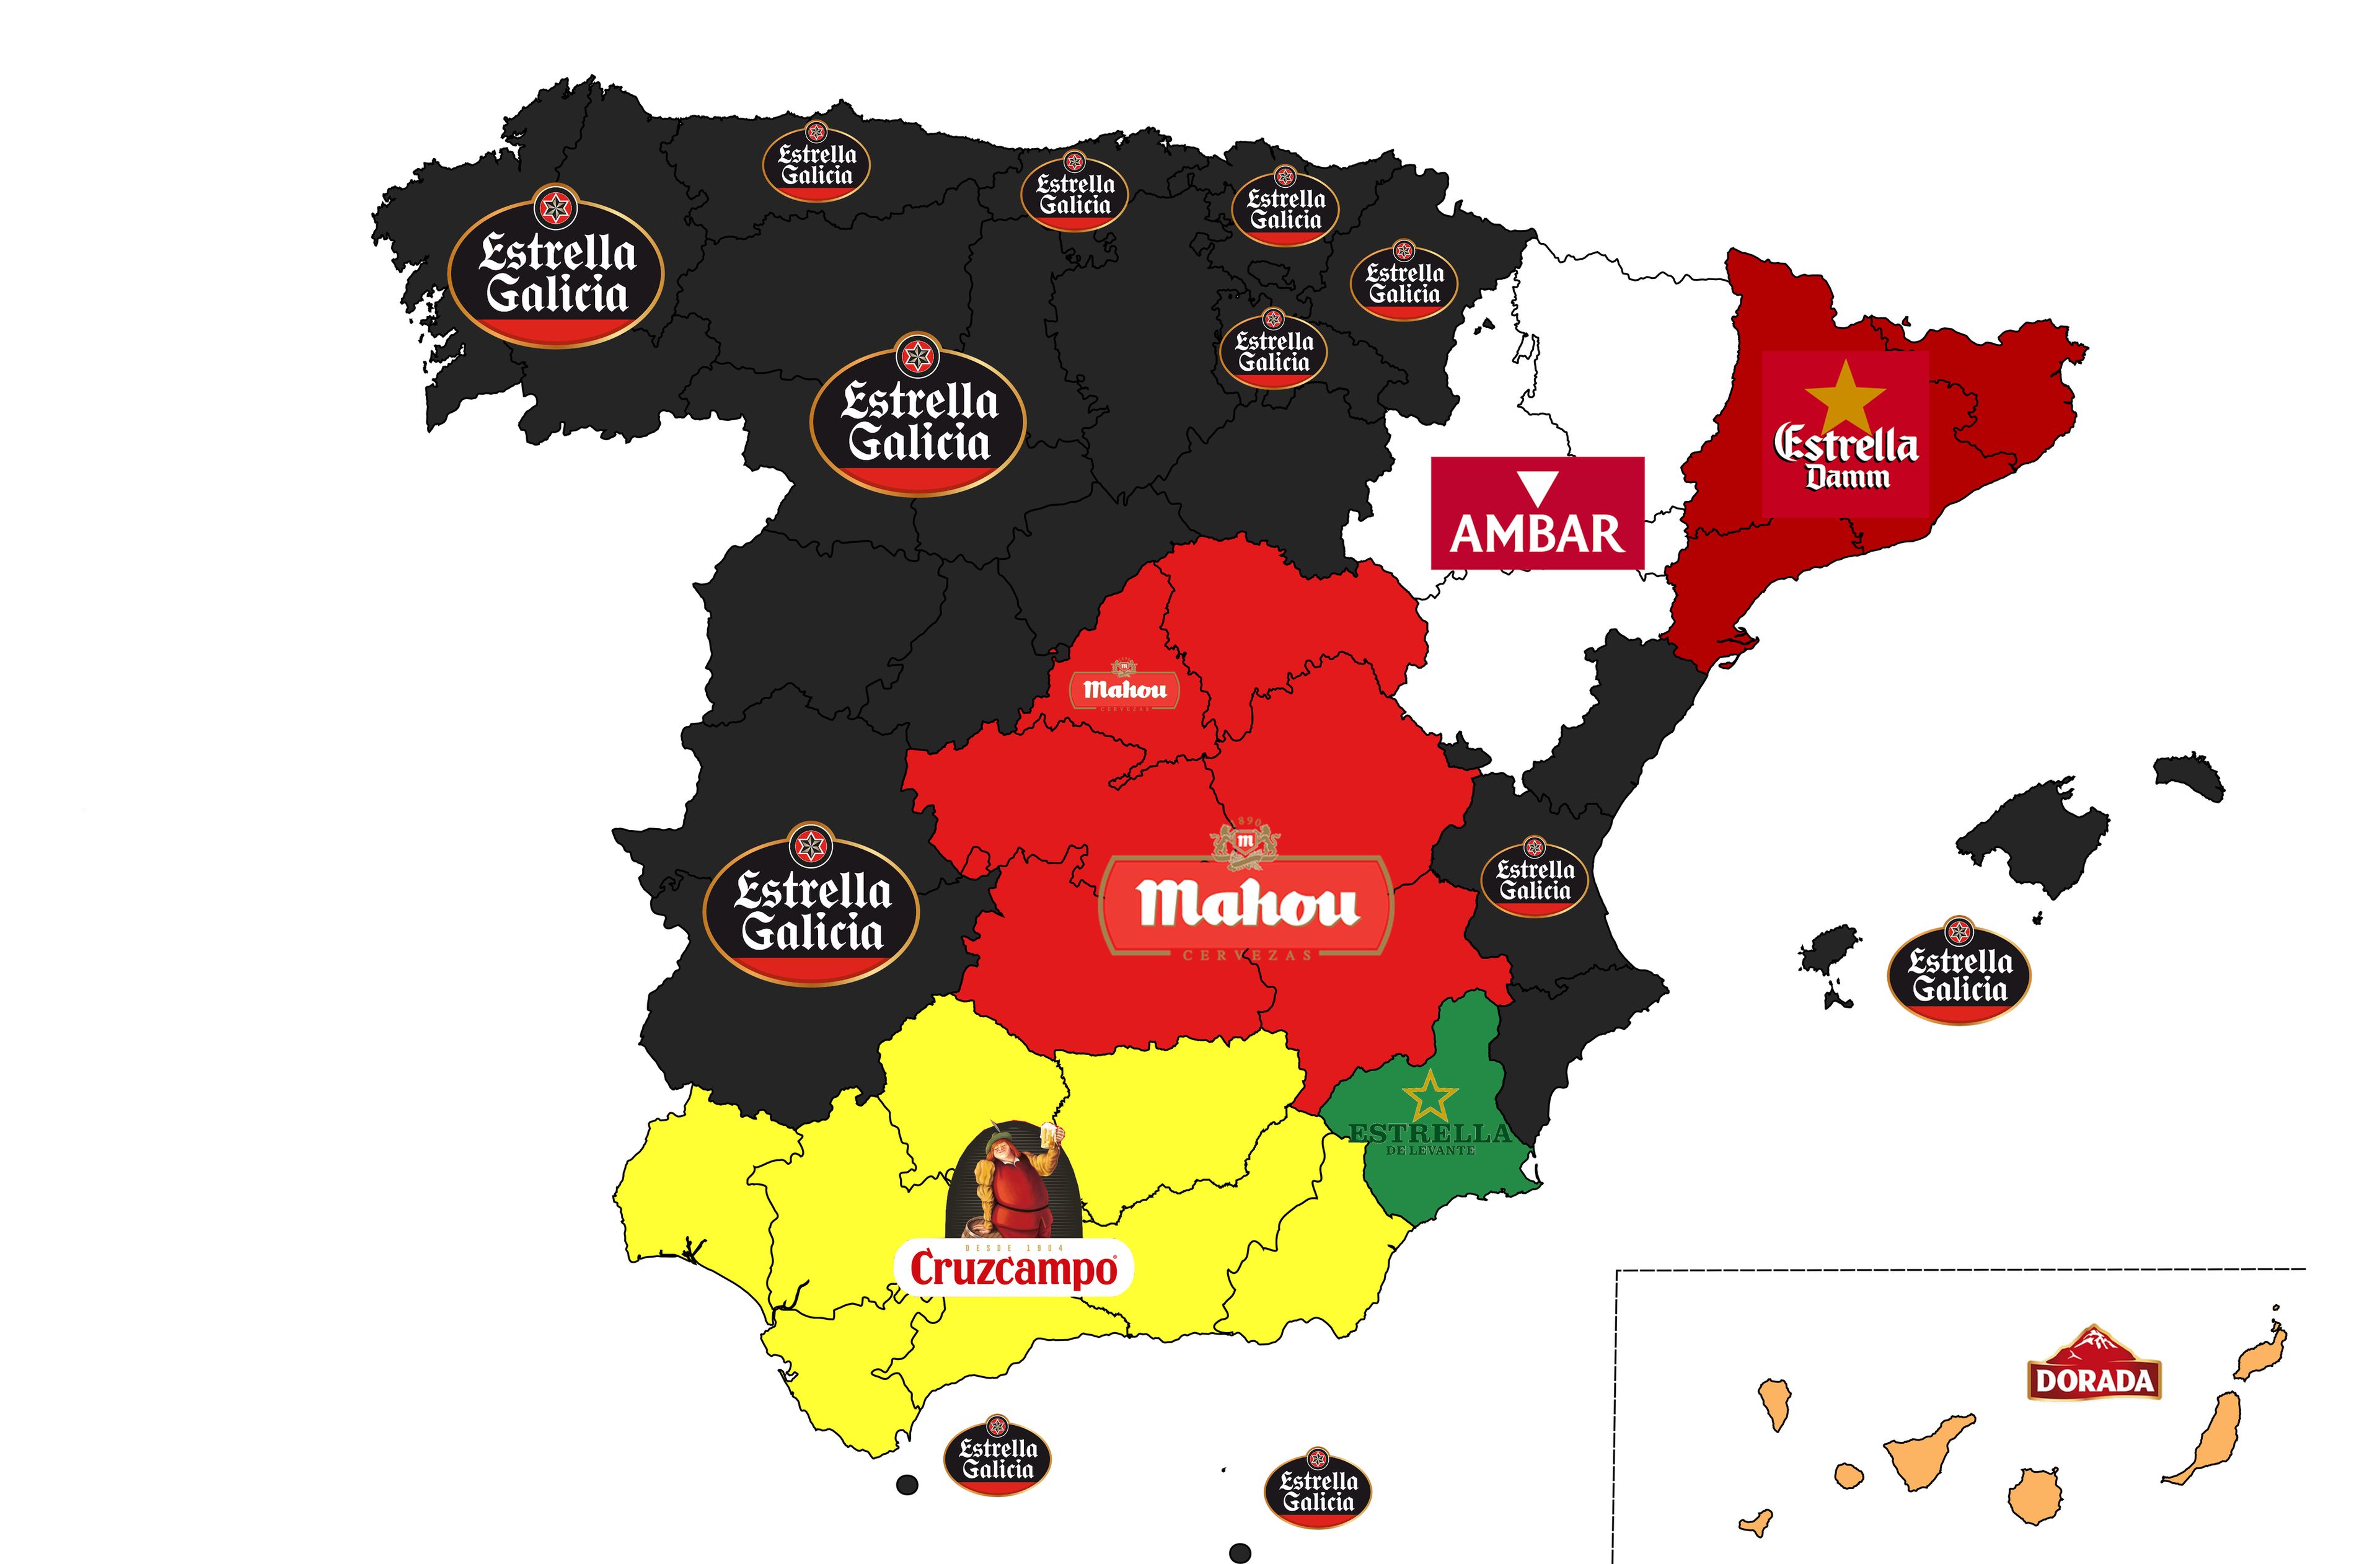 Mapa de las marcas de cerveza favoritas por comunidades autónomas en España.